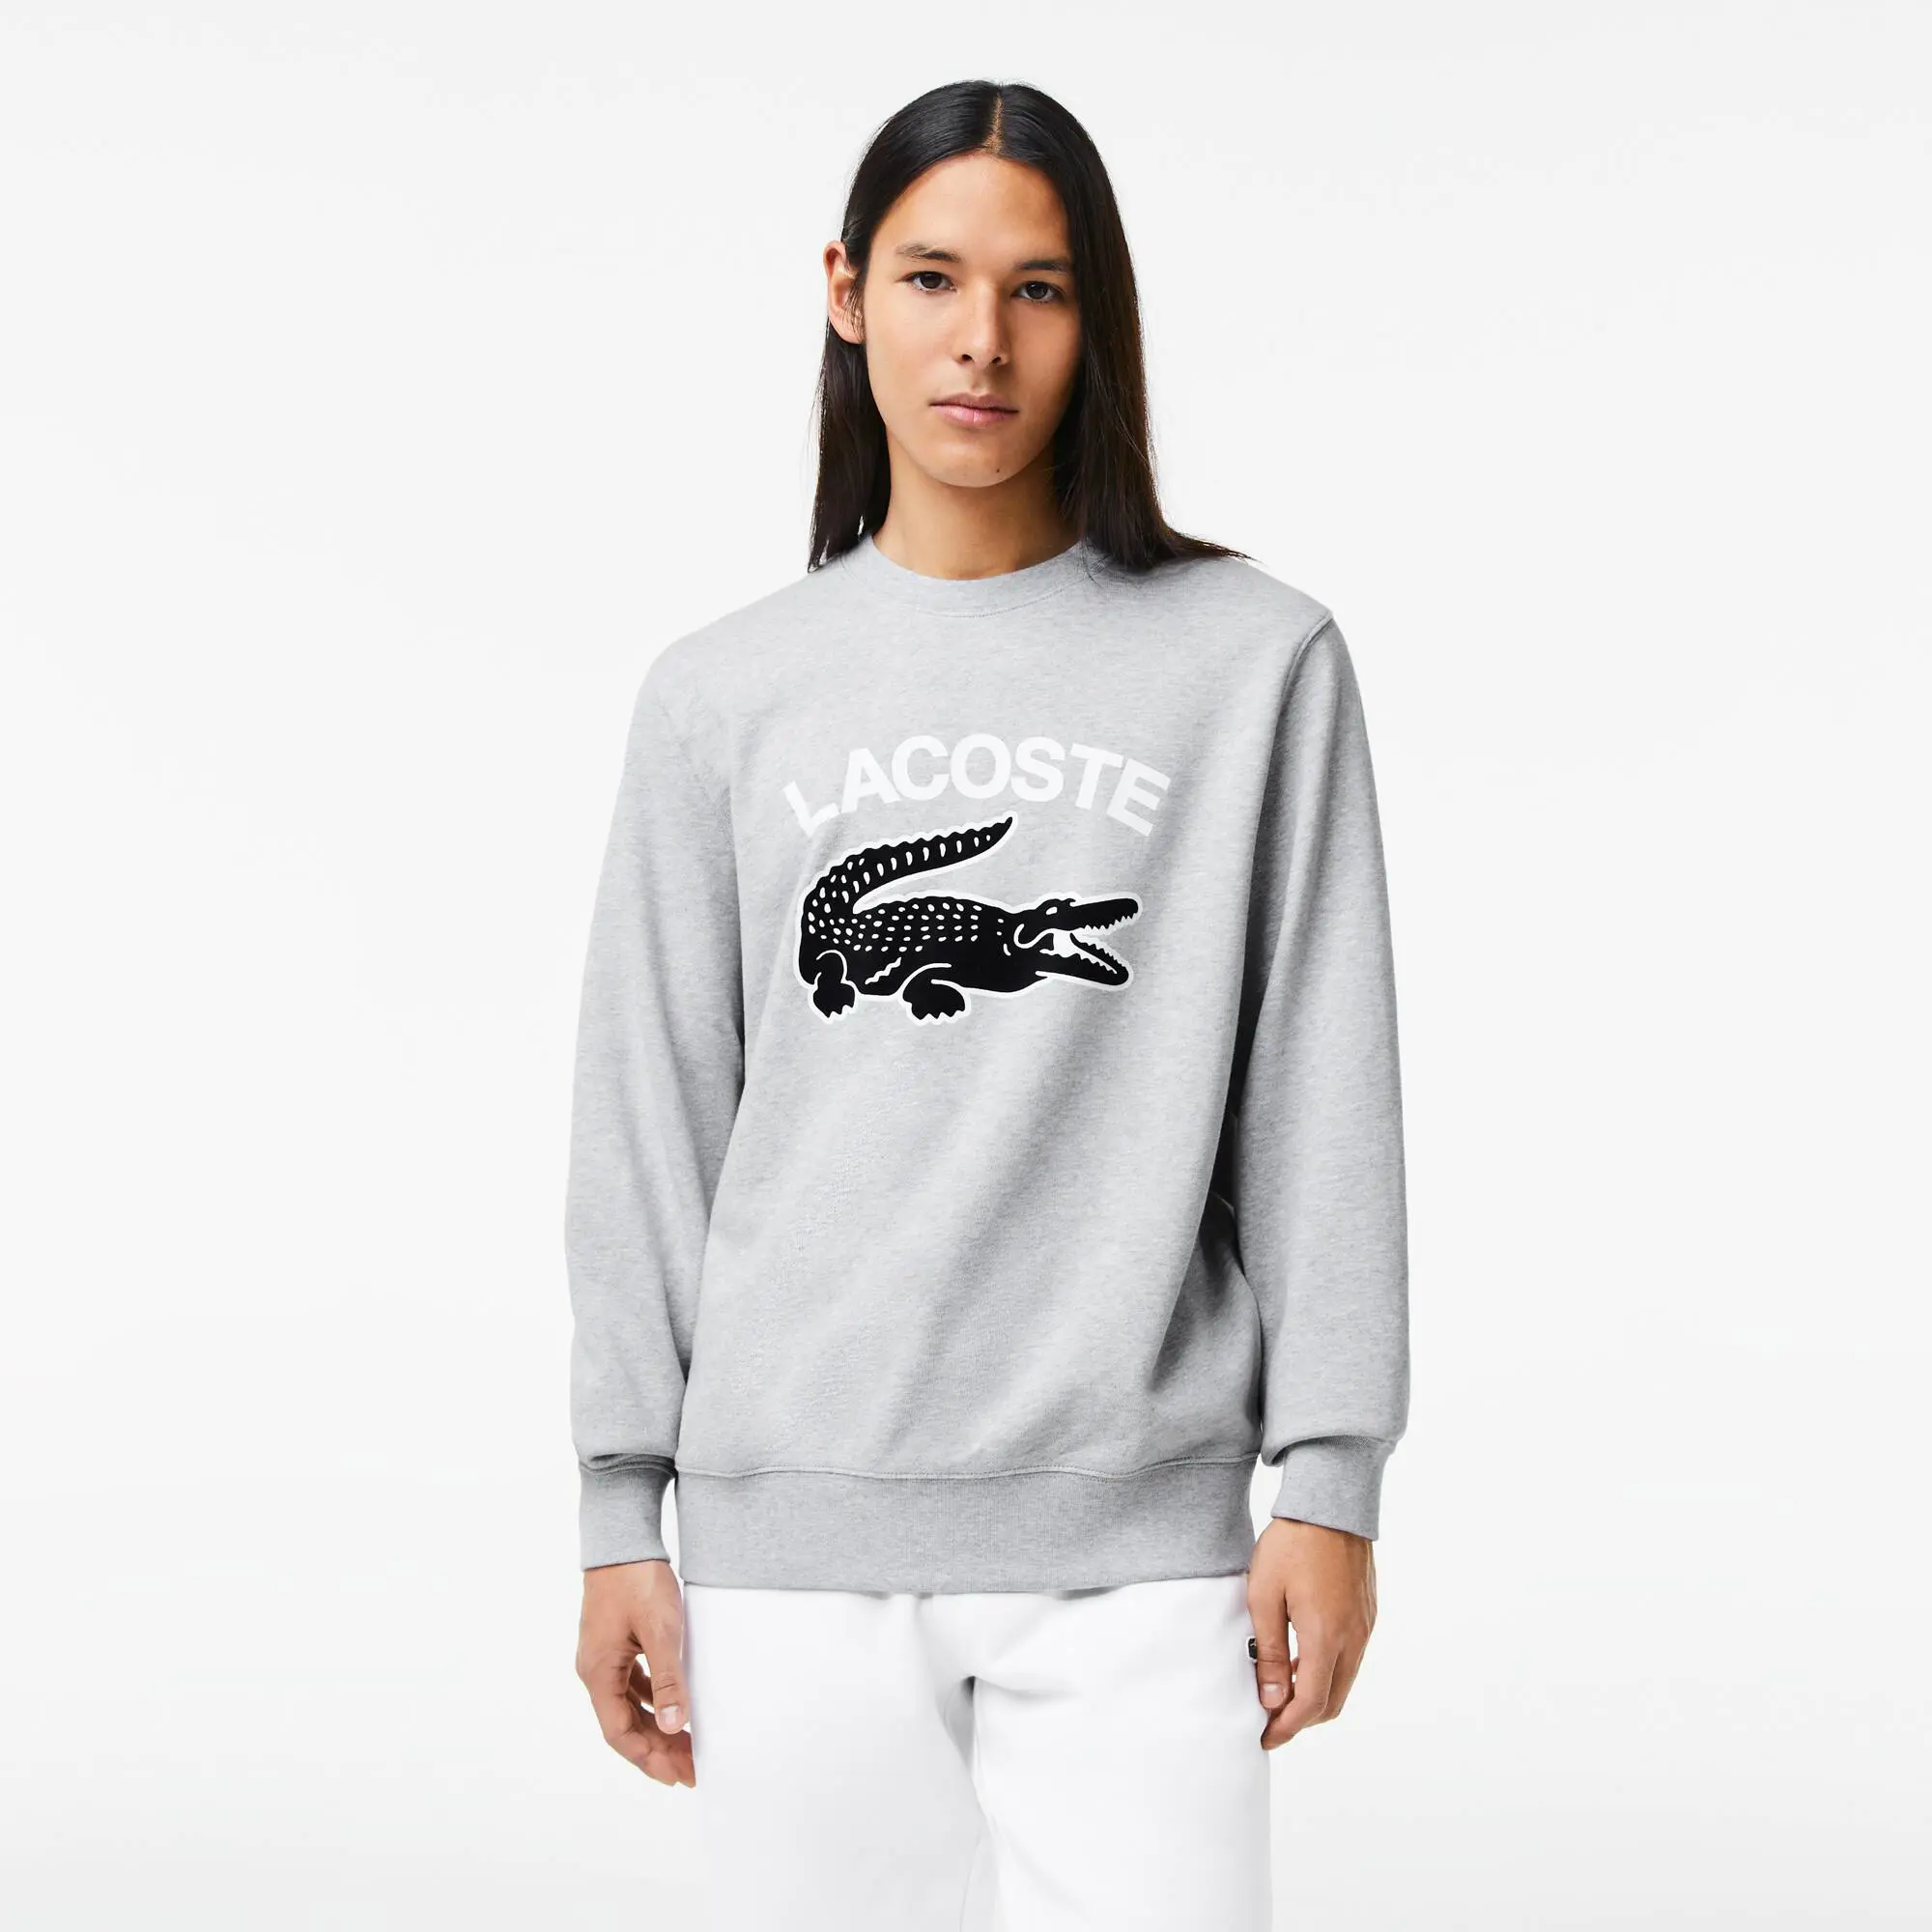 Lacoste Sweatshirt de decote redondo com estampado do crocodilo Lacoste para homem. 1